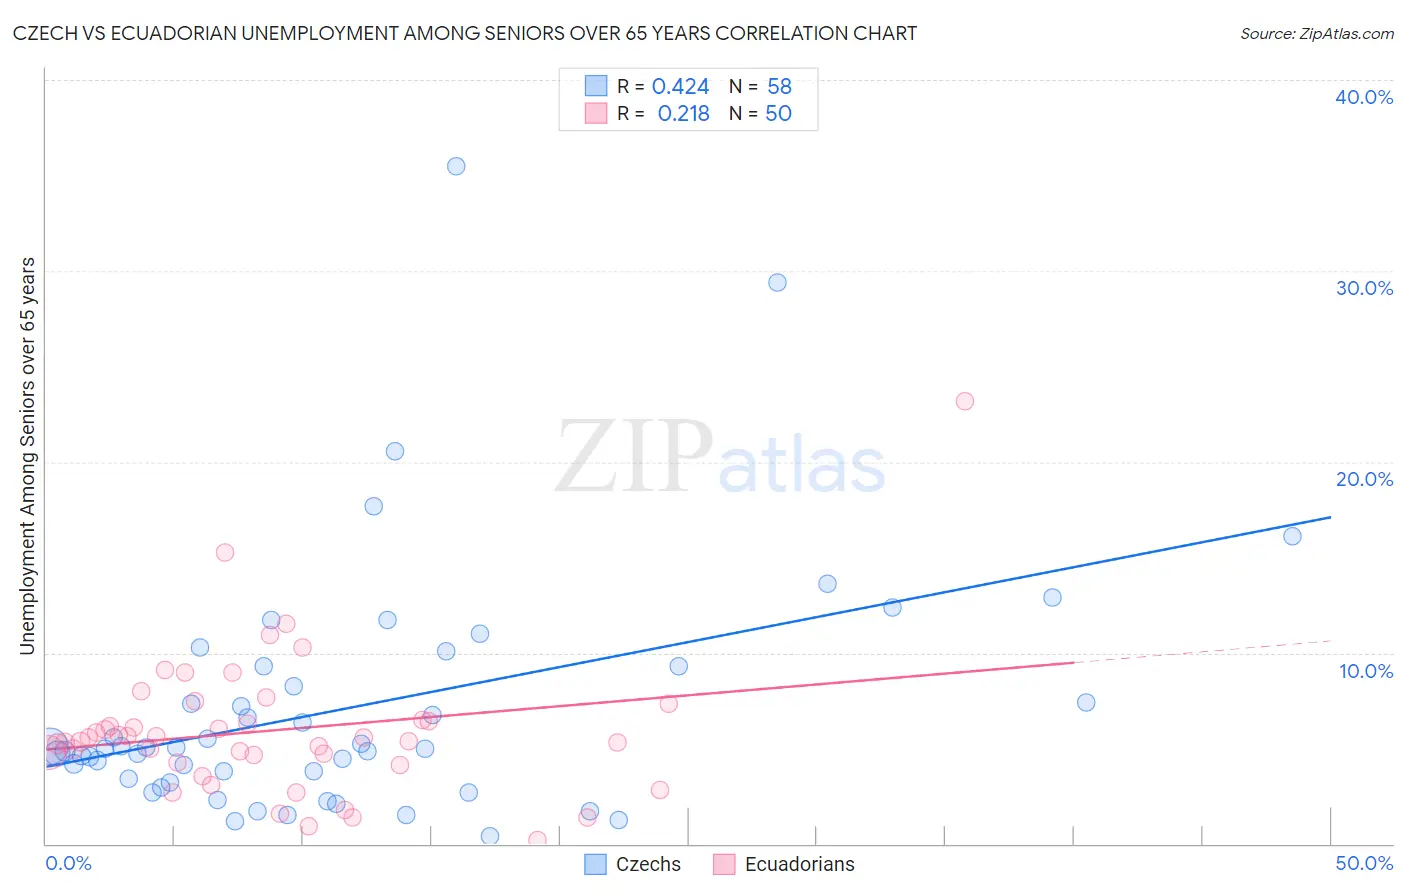 Czech vs Ecuadorian Unemployment Among Seniors over 65 years